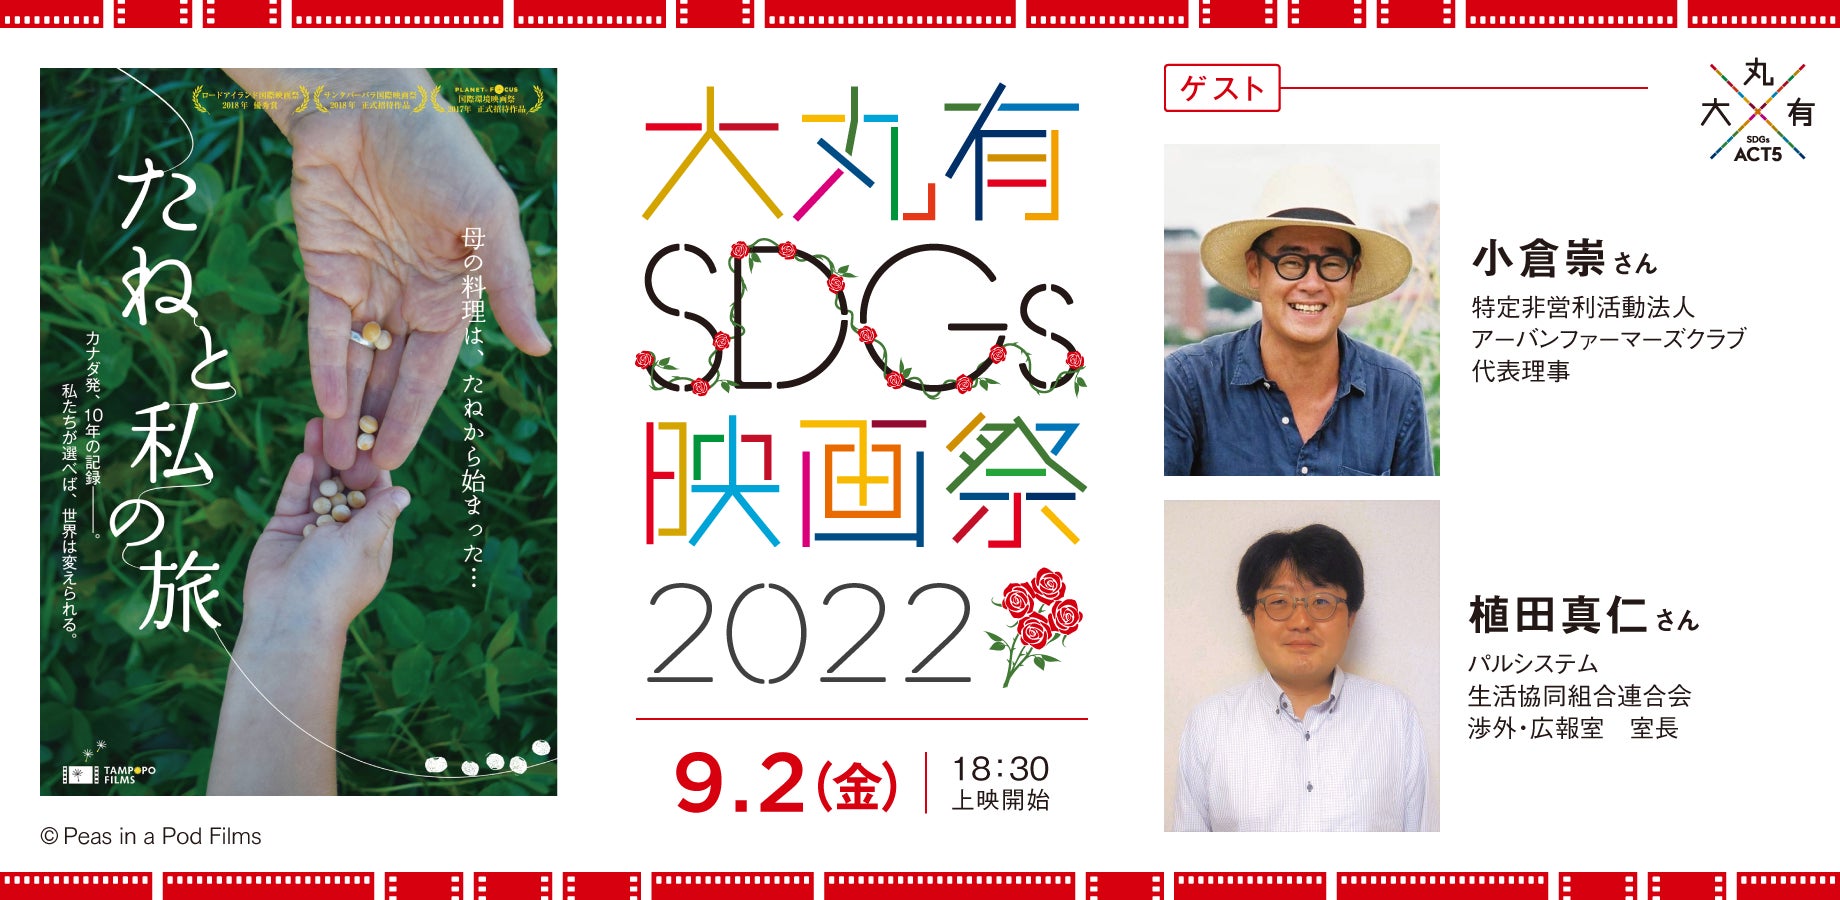 9/2（金）大丸有SDGs映画祭2022『たねと私の旅』アフタートークに登壇遺伝子組み換え食品の課題を問うドキュメンタリーのサブ画像1